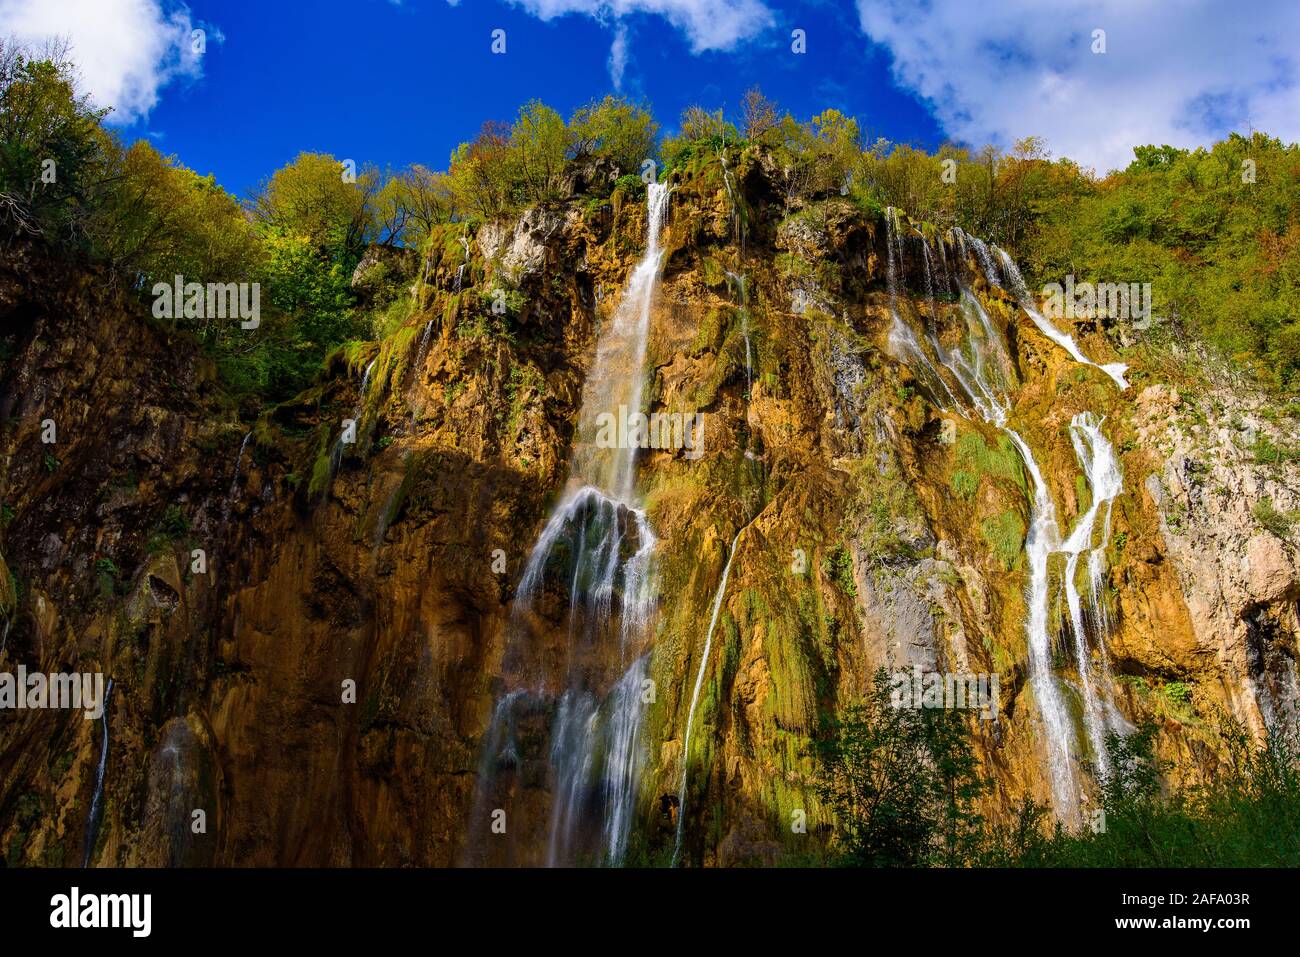 Gran Cascada en lagos inferiores, la cascada más alta en el Parque Nacional de Los Lagos de Plitvice (Plitvička jezera), Croacia Foto de stock